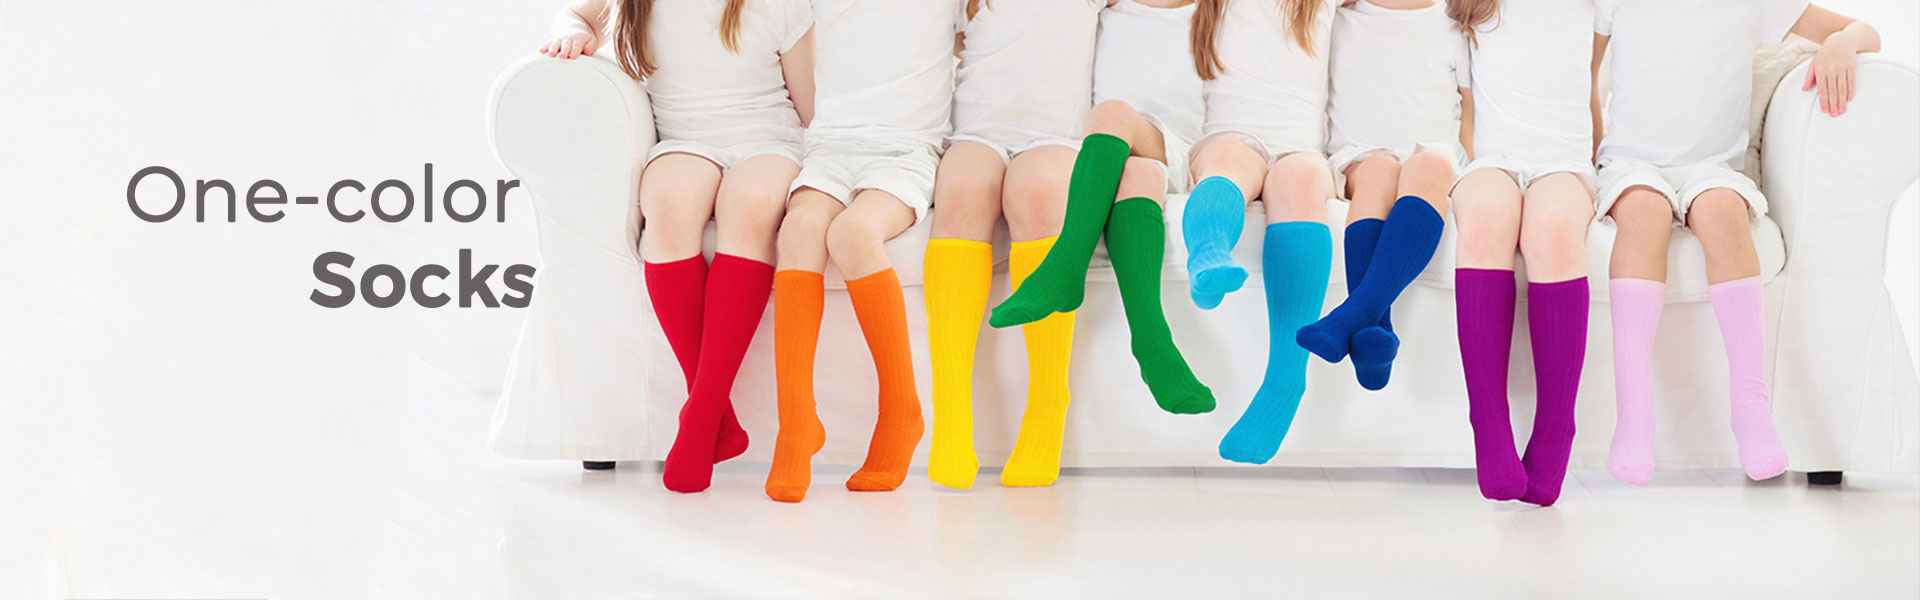 Vegateksa one-color socks